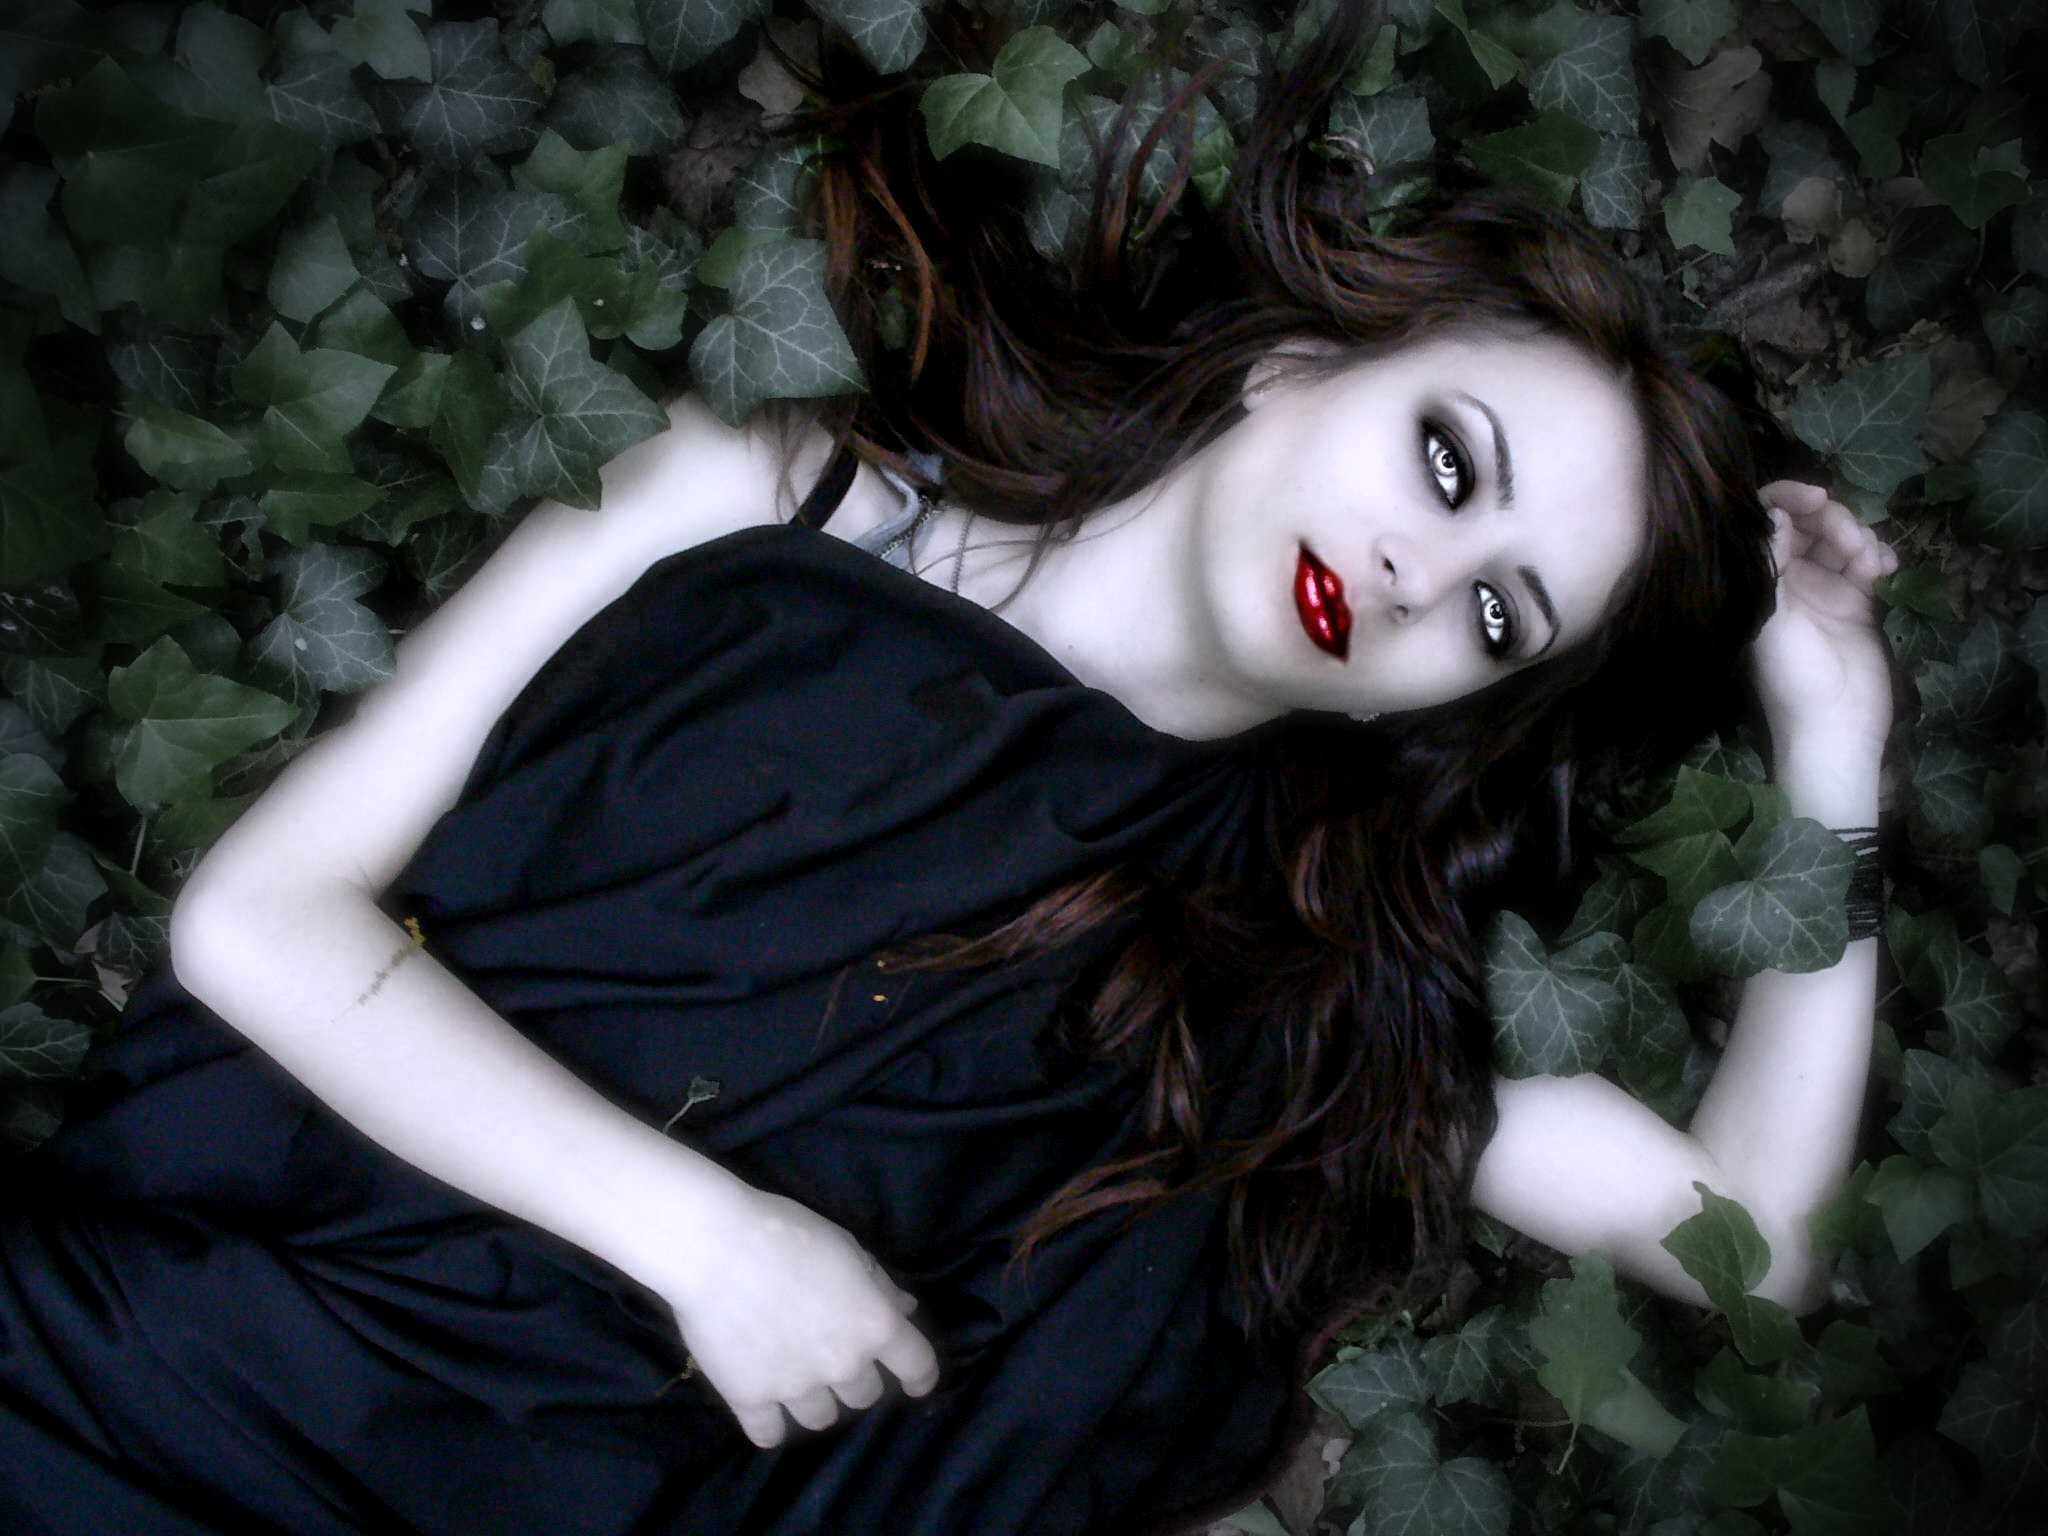 2048x1536 Vampire Girl lying in the leaves wallpaper from Vampire wallpapers